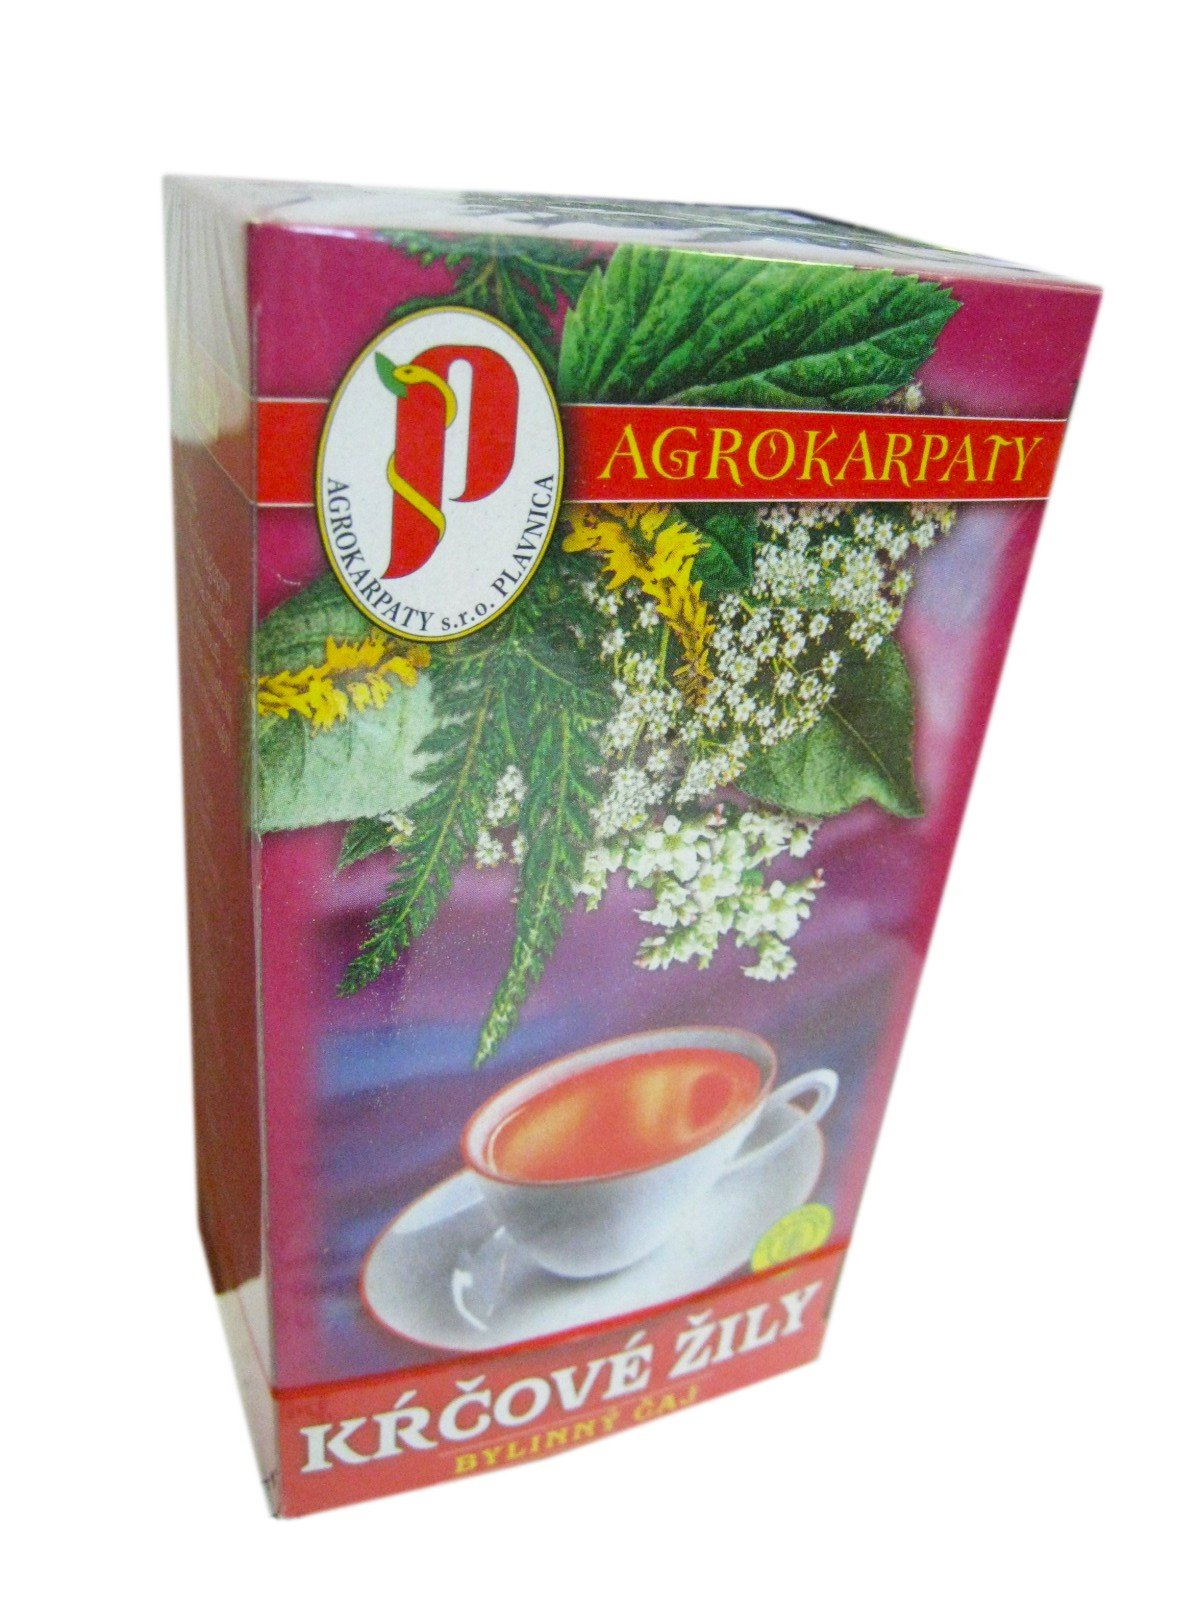 Agrokarpaty kŕčové žily bylinný čaj, čistý prírodný produkt, 20x2 g (40 g)